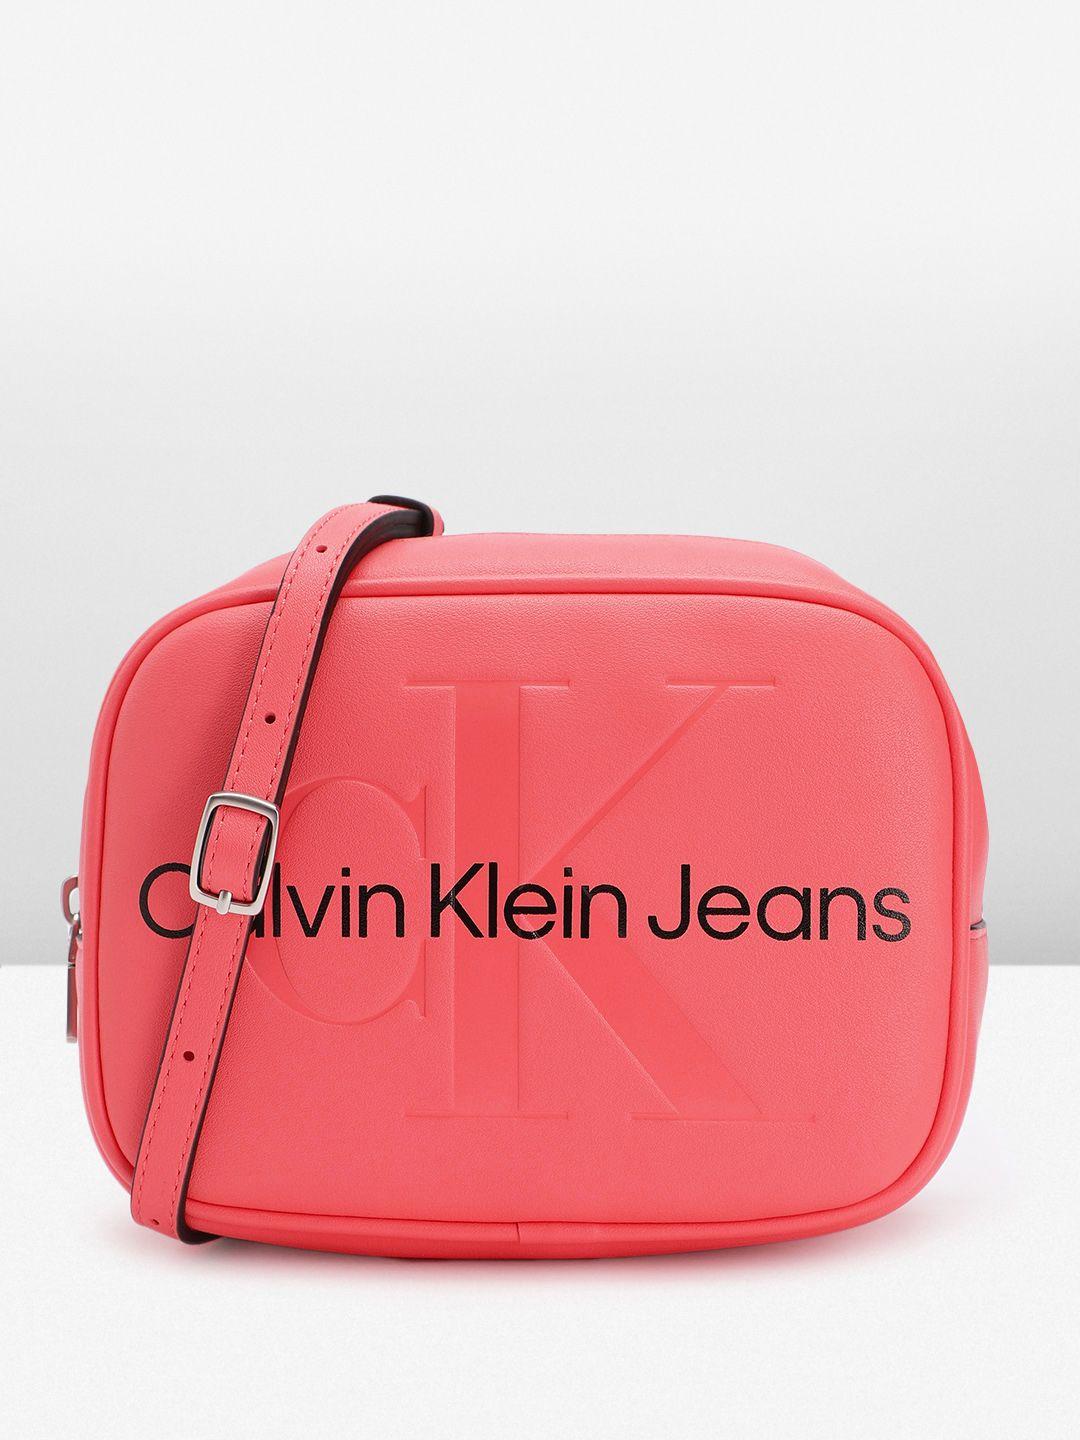 calvin klein women brand logo printed sling bag